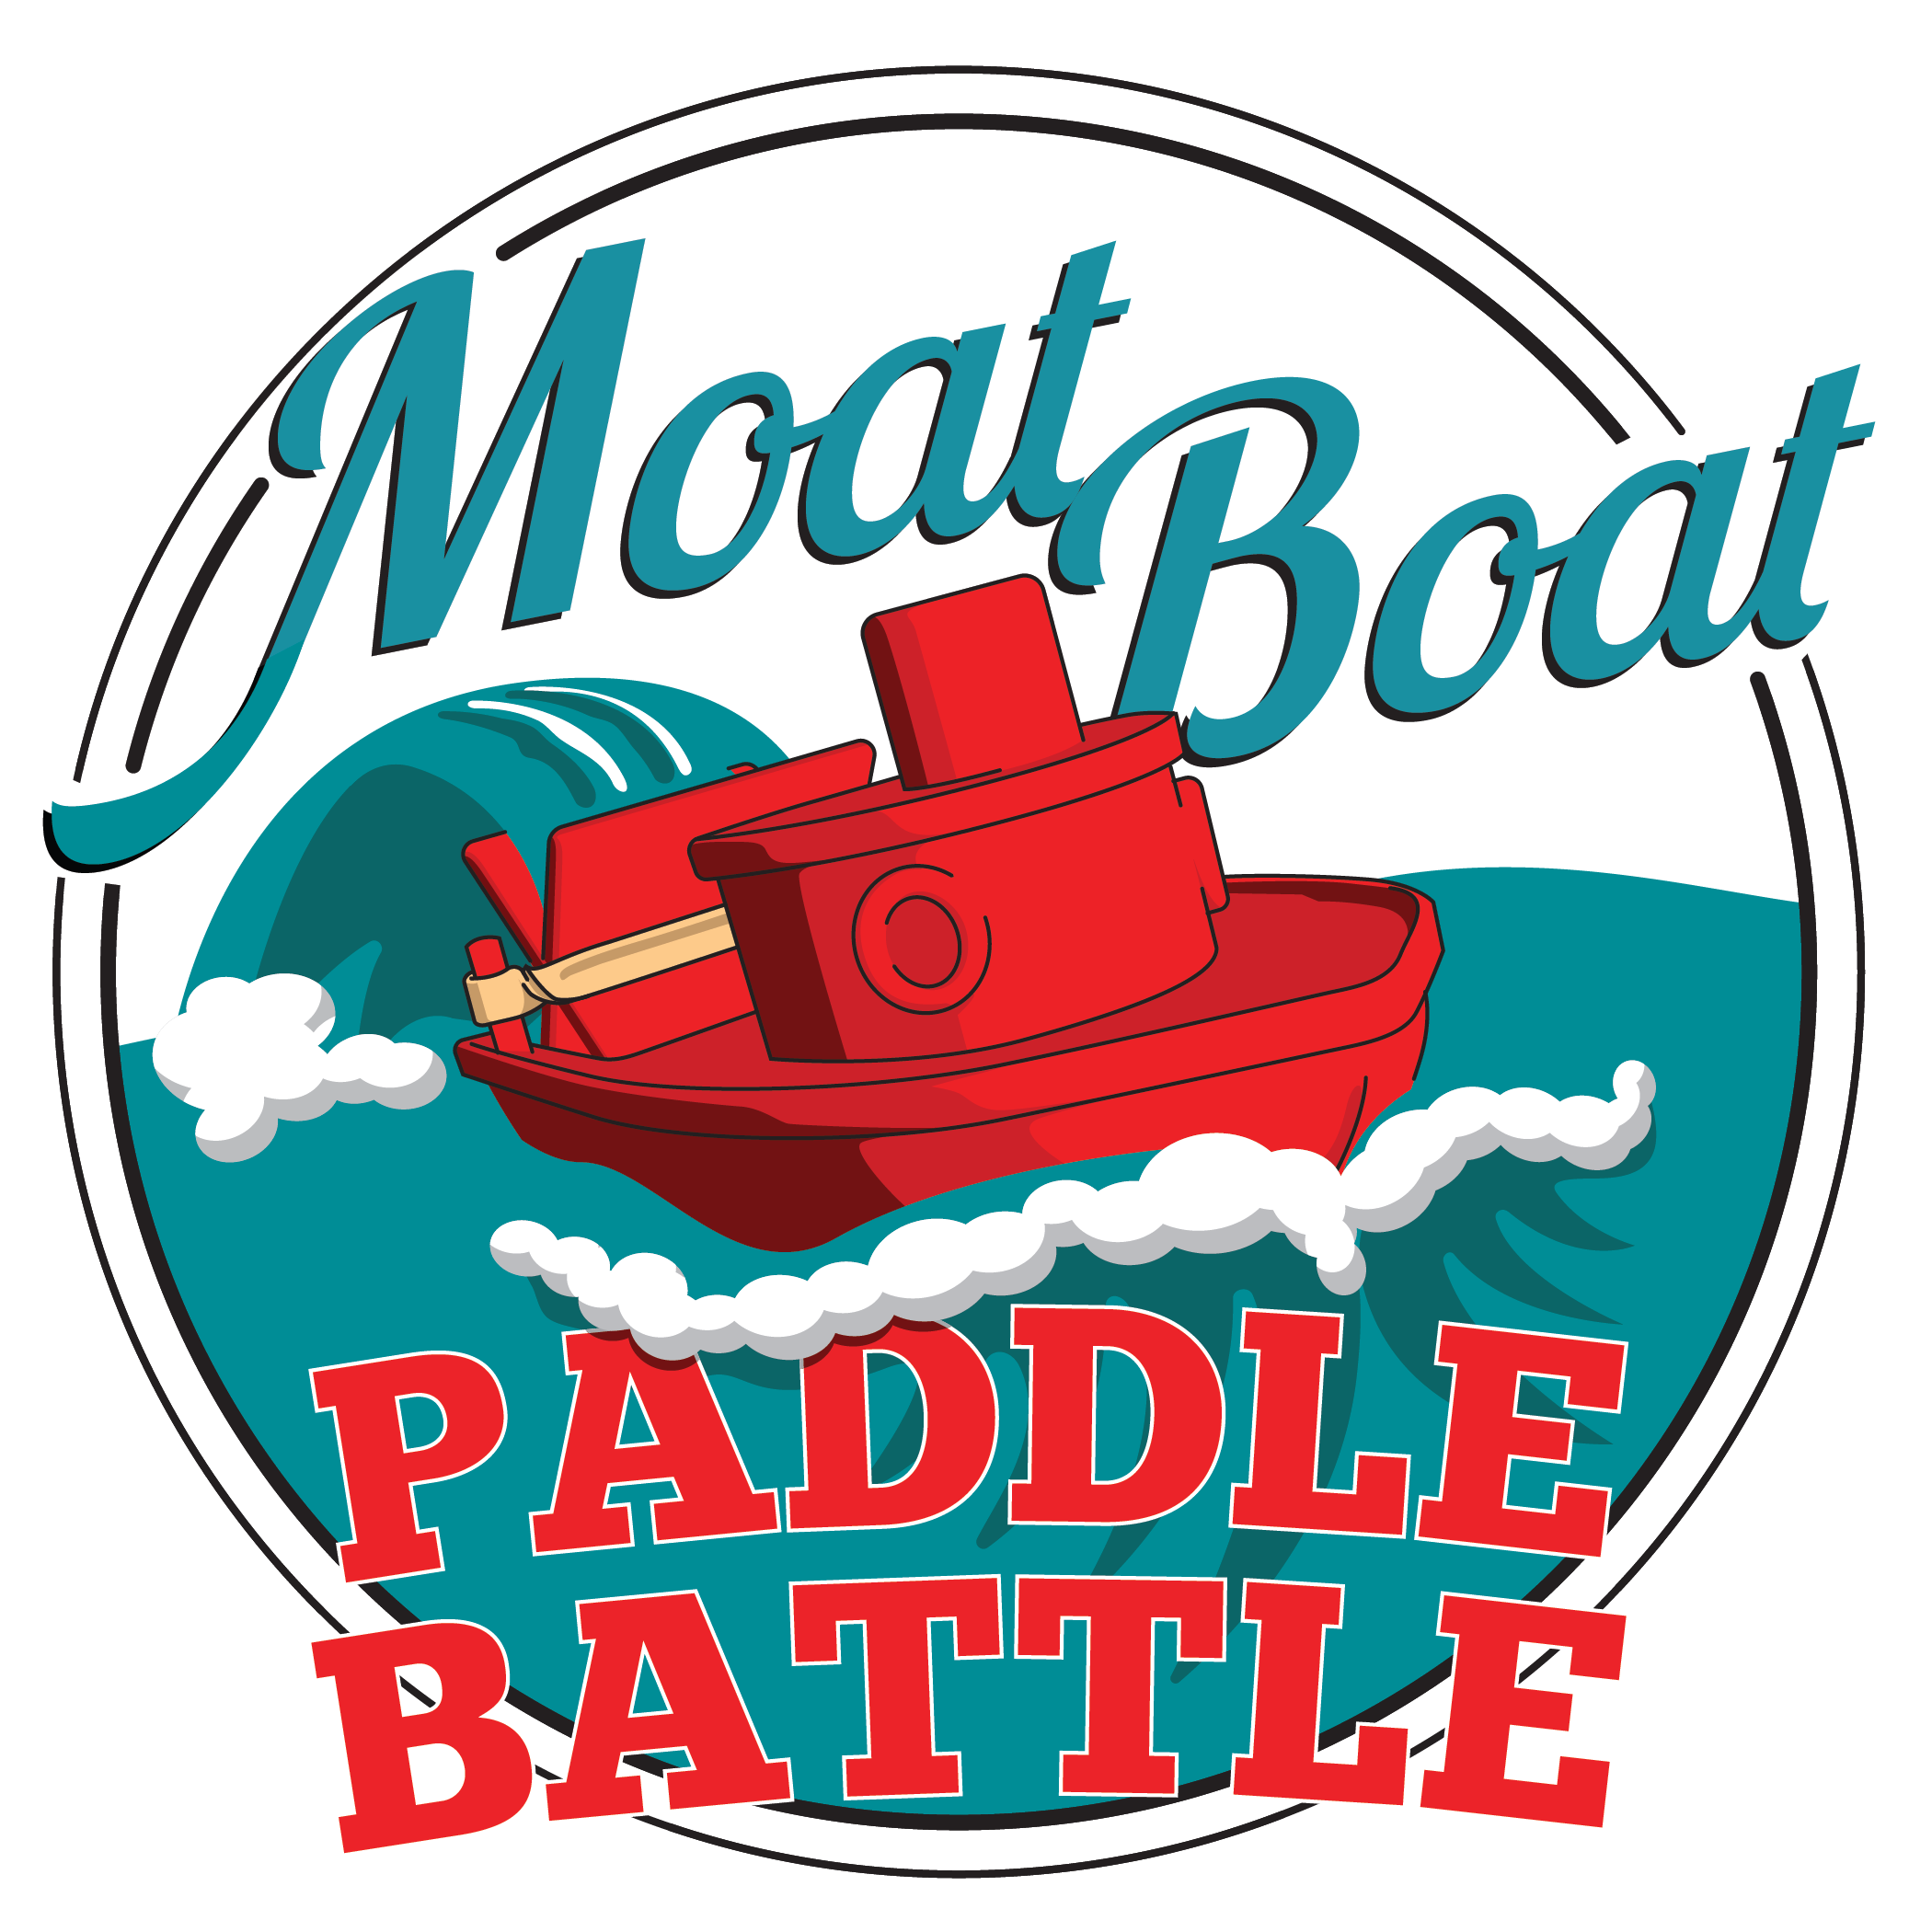 Moat Boat Paddle Battle